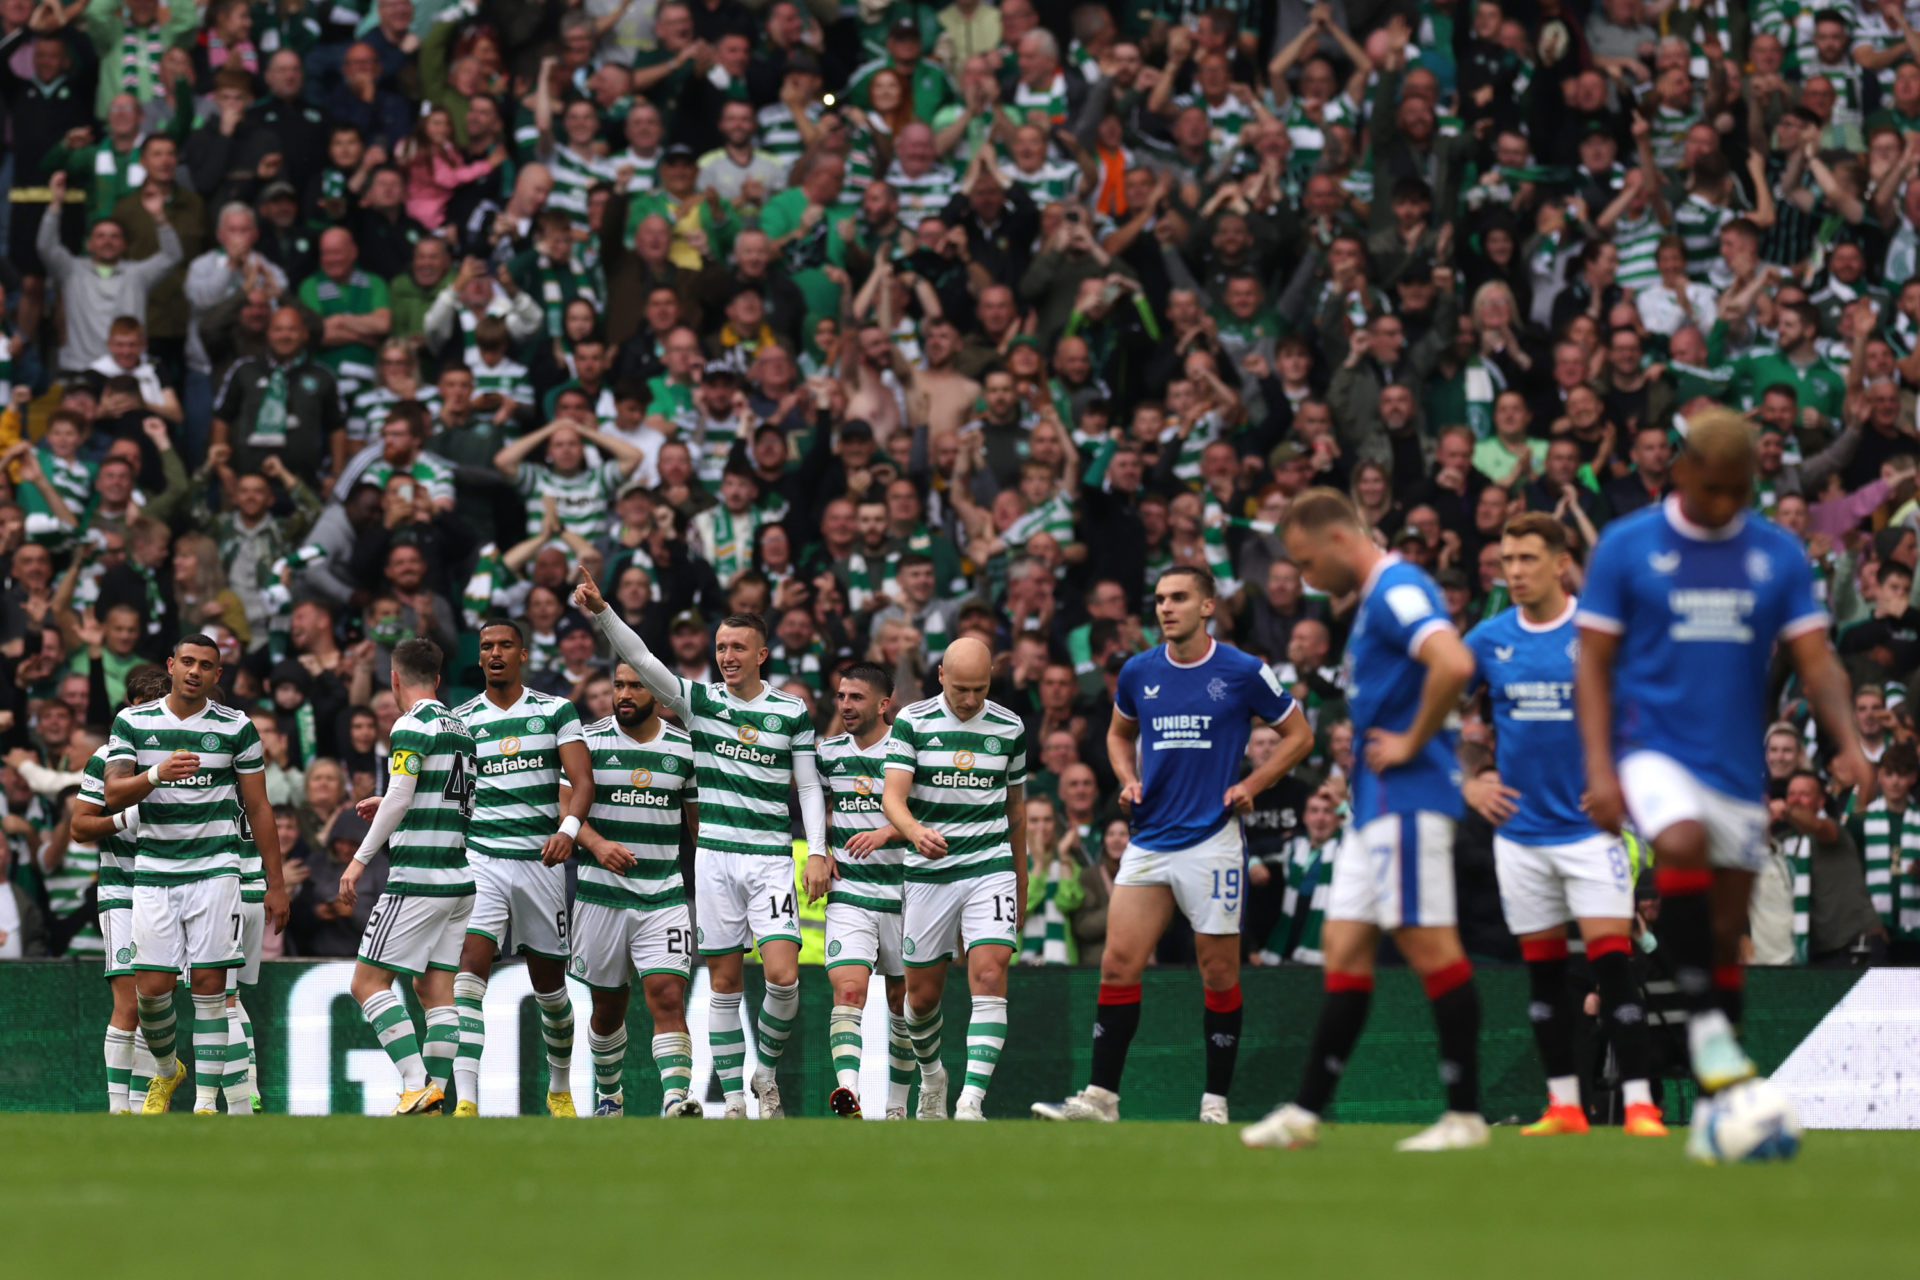 Celtic thumped Rangers 4-0 in September